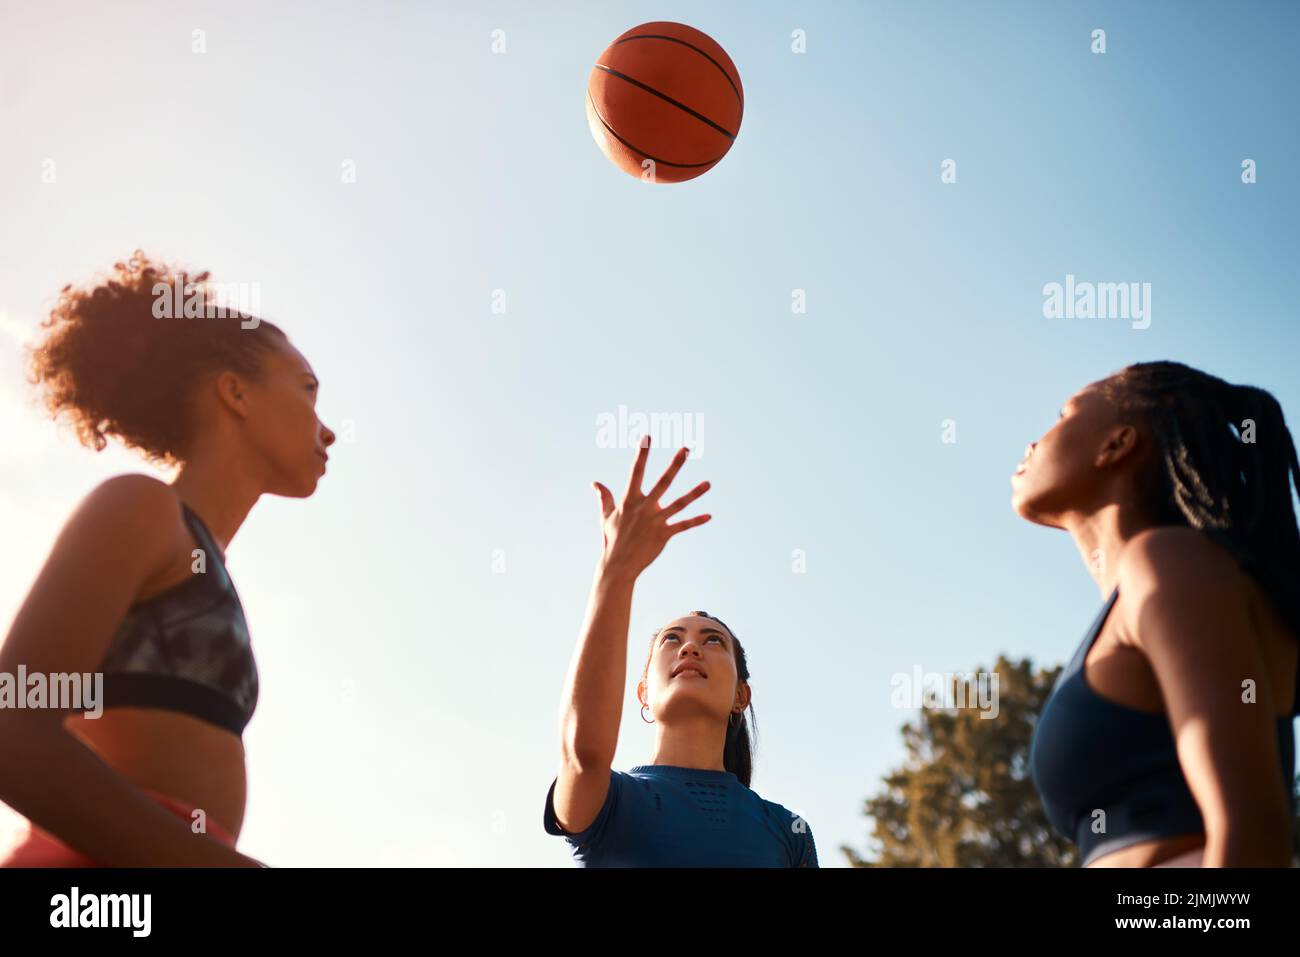 Le premier à obtenir le ballon commence. Un groupe diversifié de sportswomen jouant un jeu de basket-ball de compétition ensemble pendant la journée. Banque D'Images